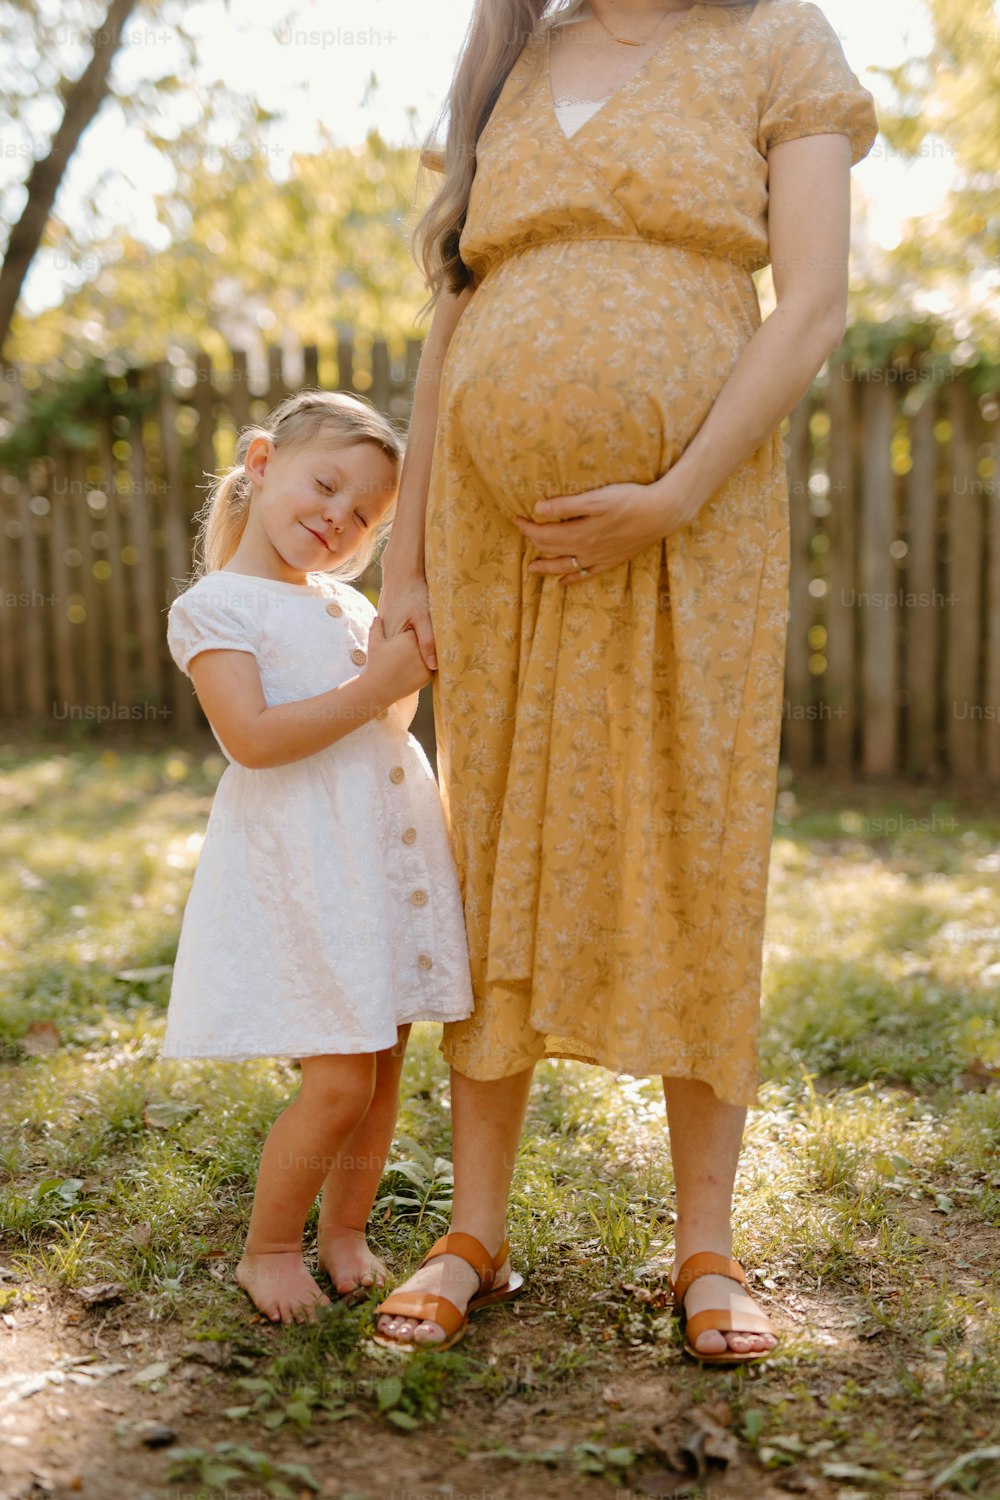 Una mujer embarazada de pie junto a una niña